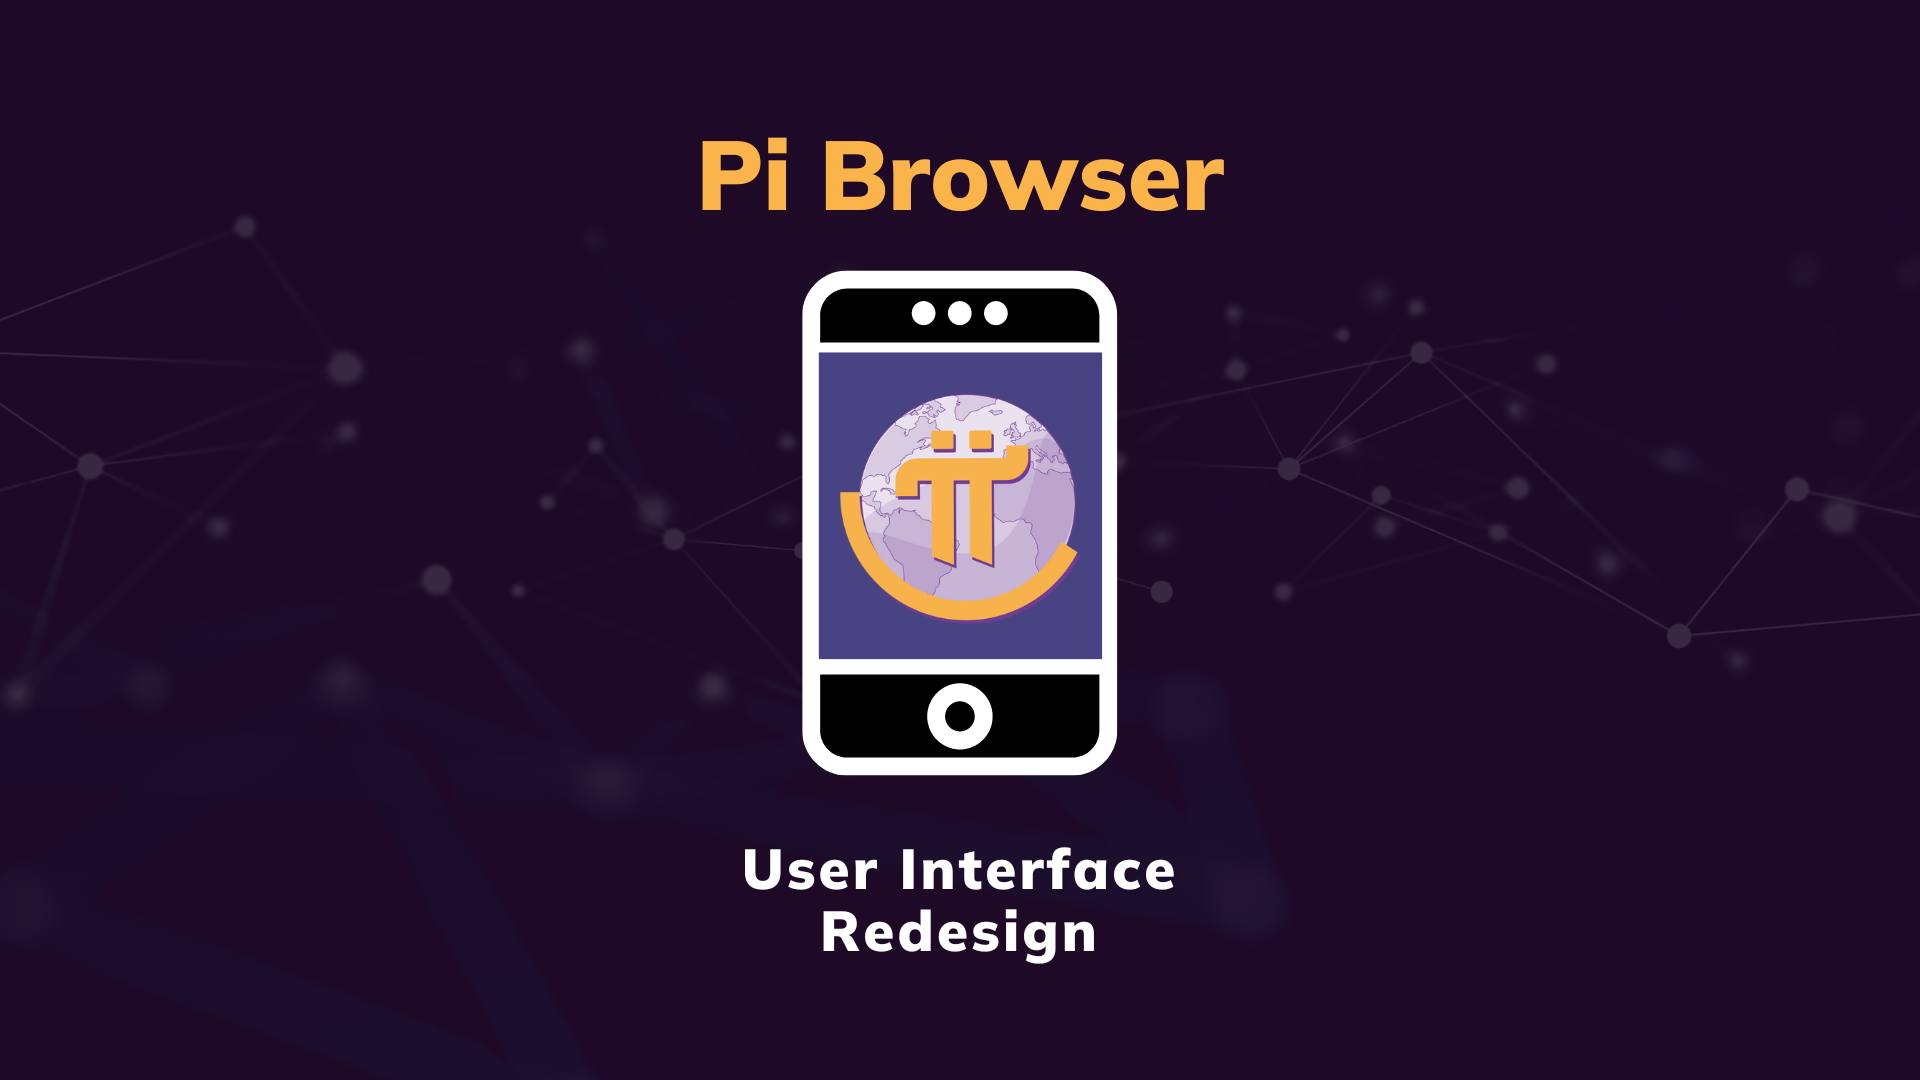 Elevating The Pi Browser Design